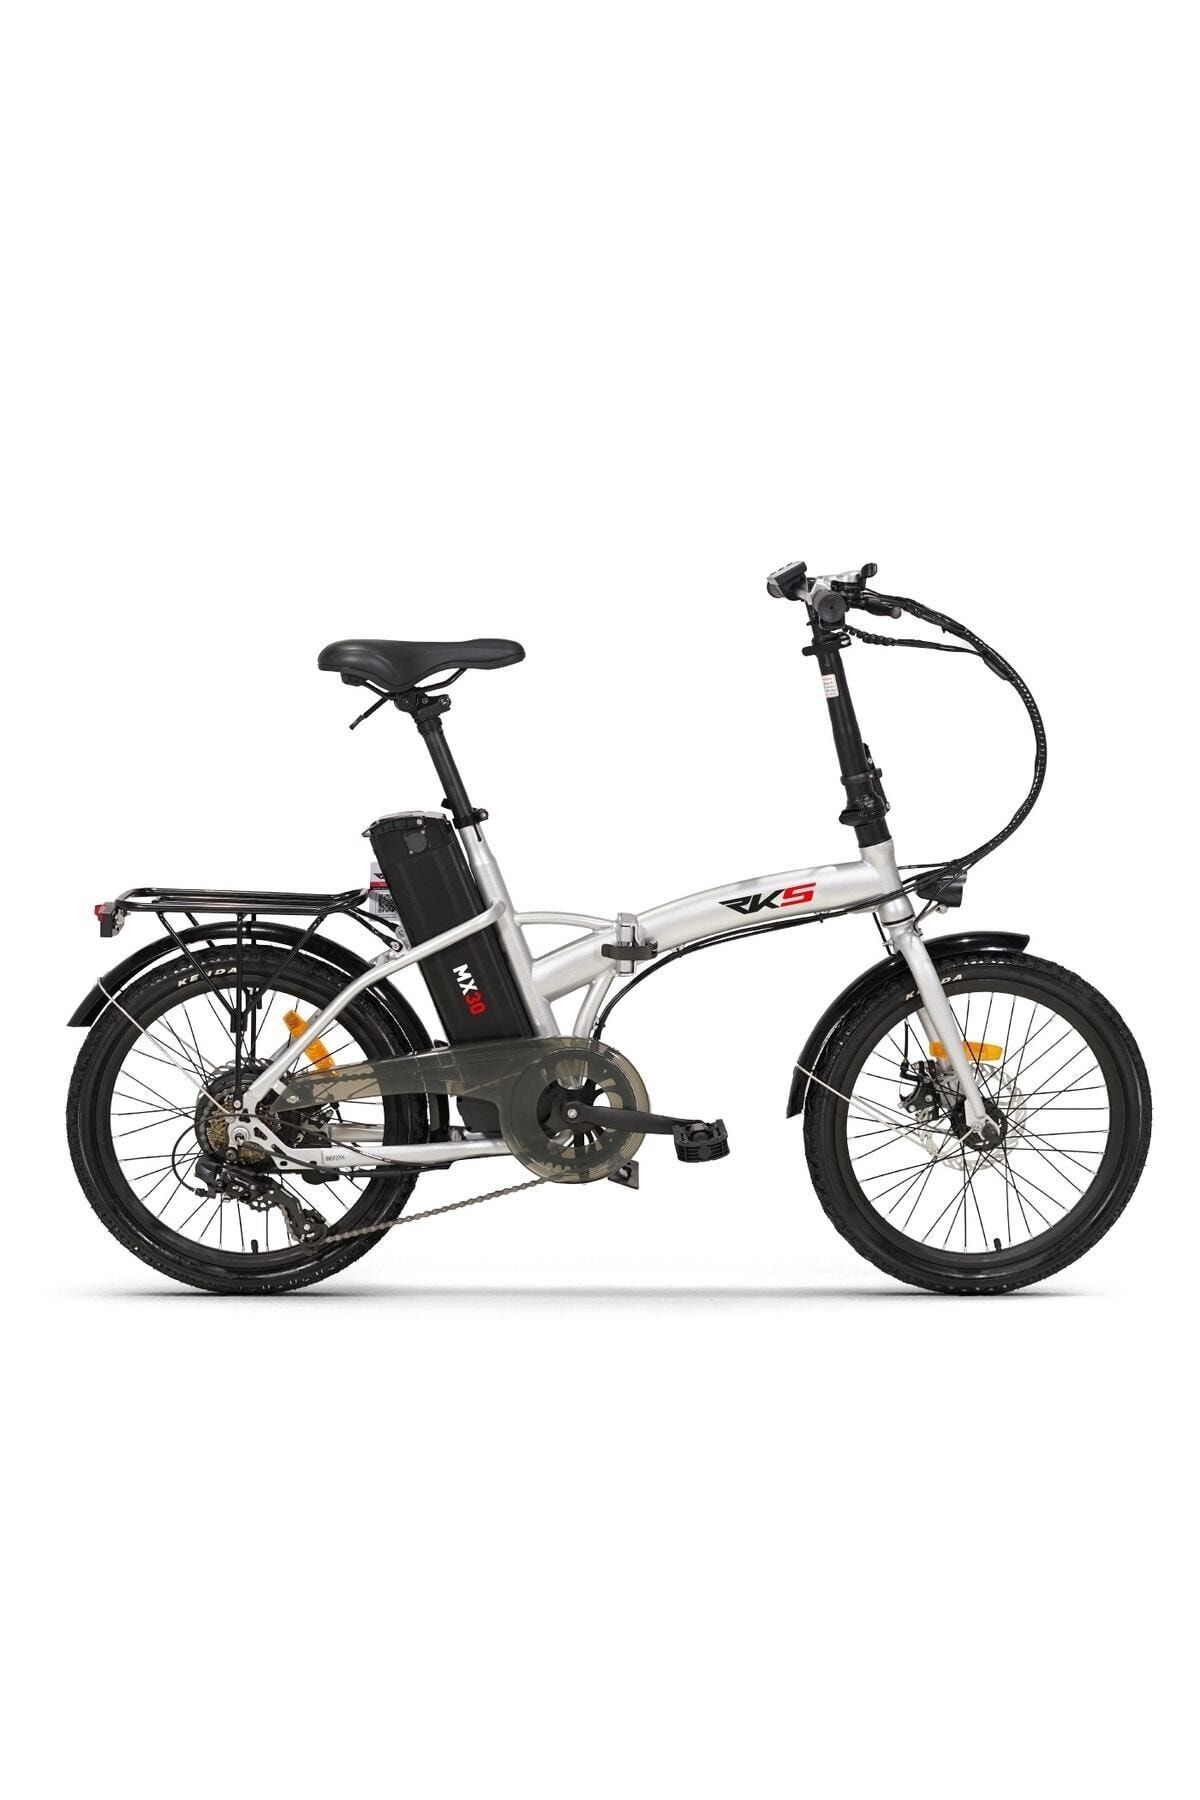 RKS Mx30 Pedal Destekli Elektirikli Bisiklet